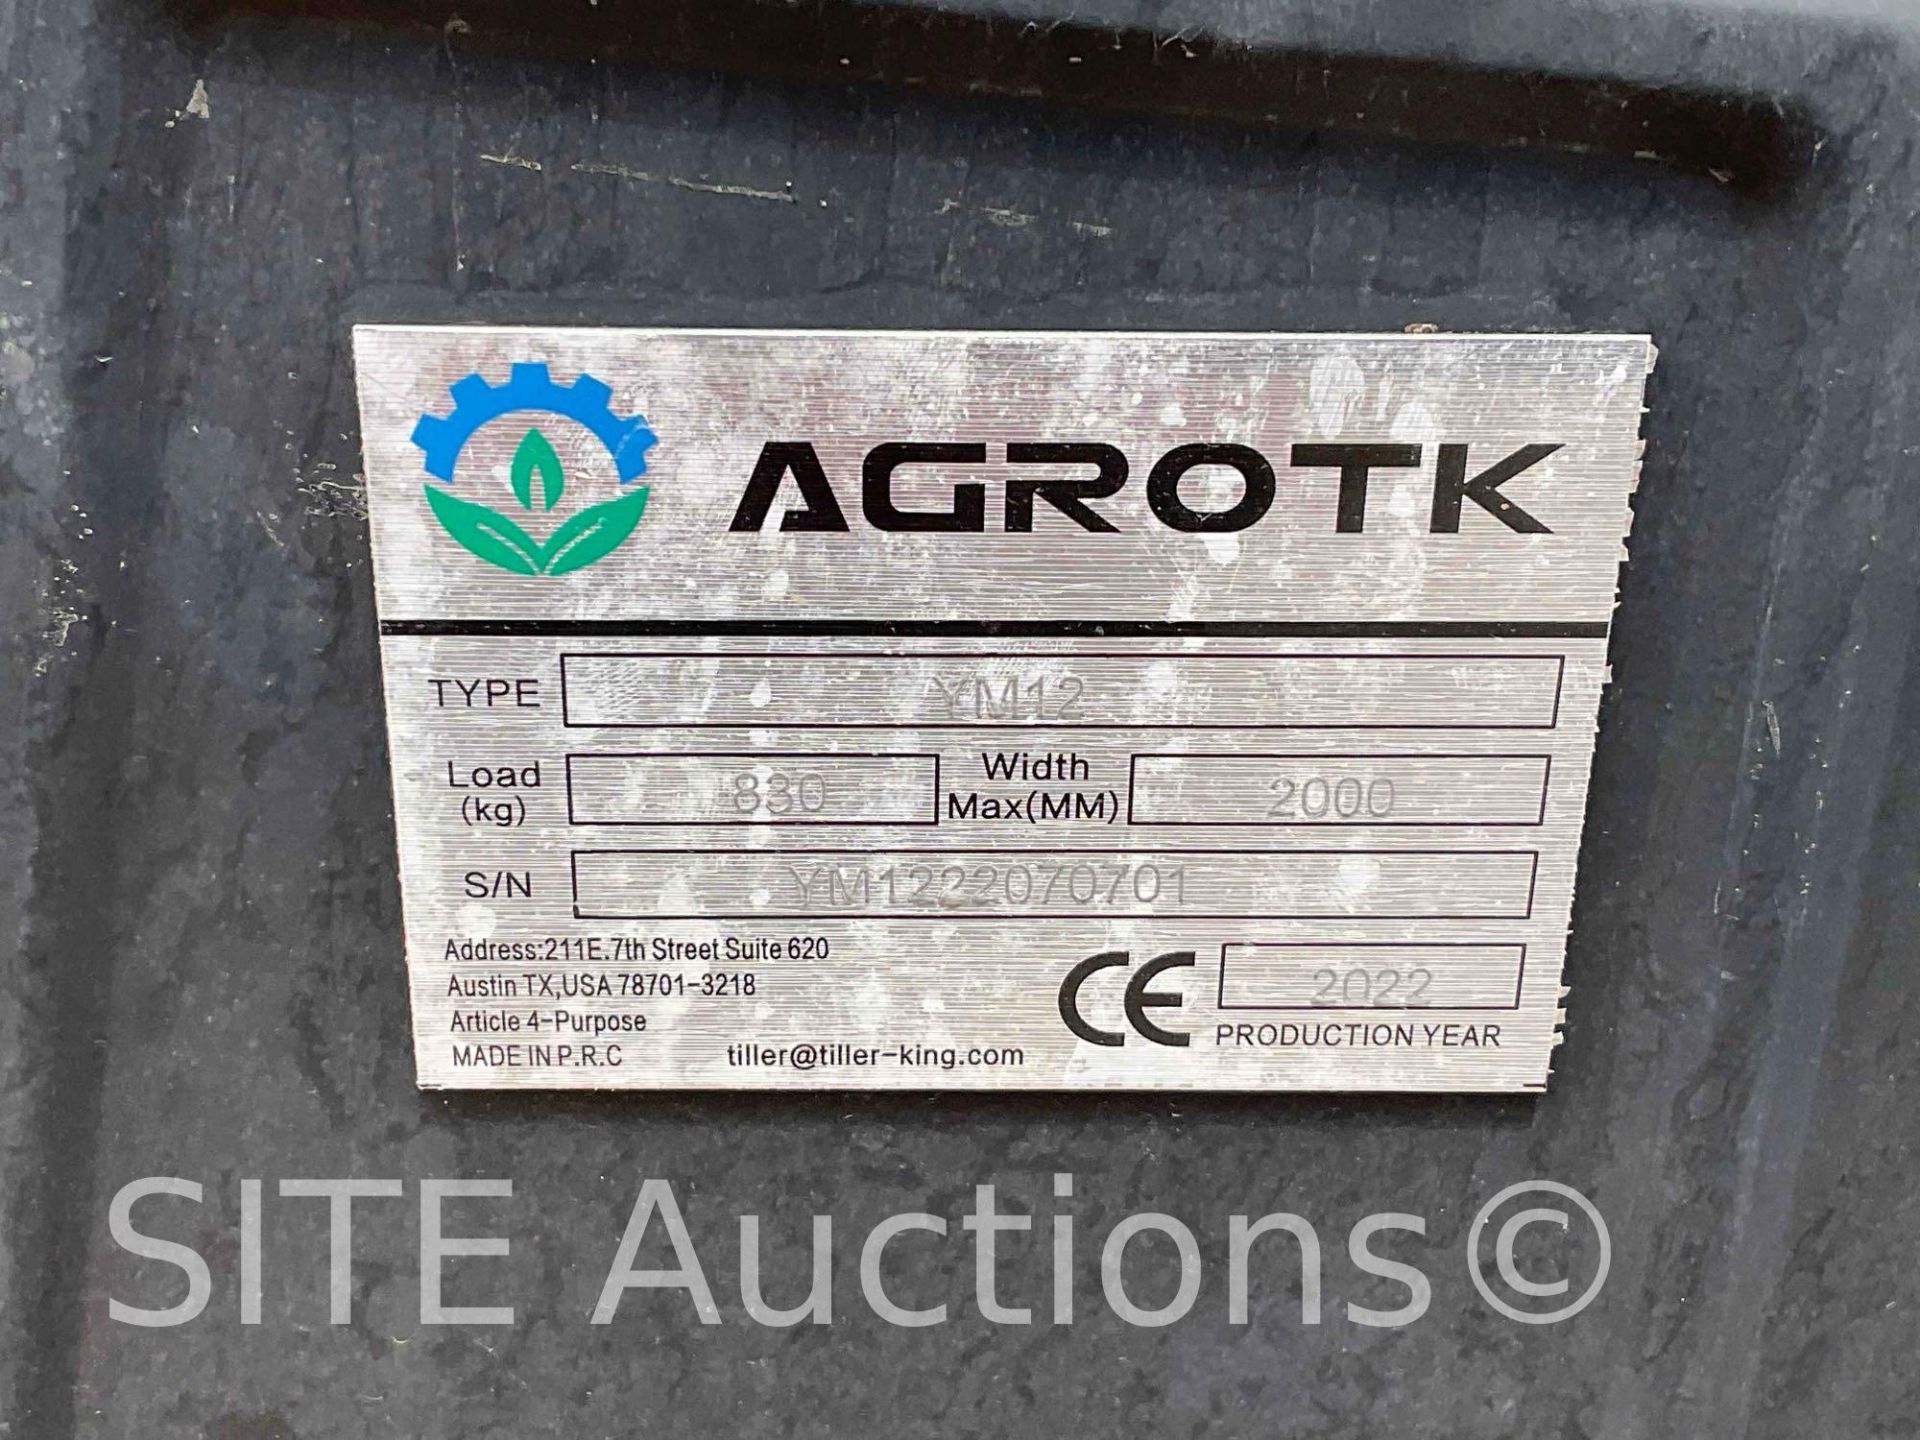 2022 Agrotk YM12 Mini Excavator - Image 19 of 19